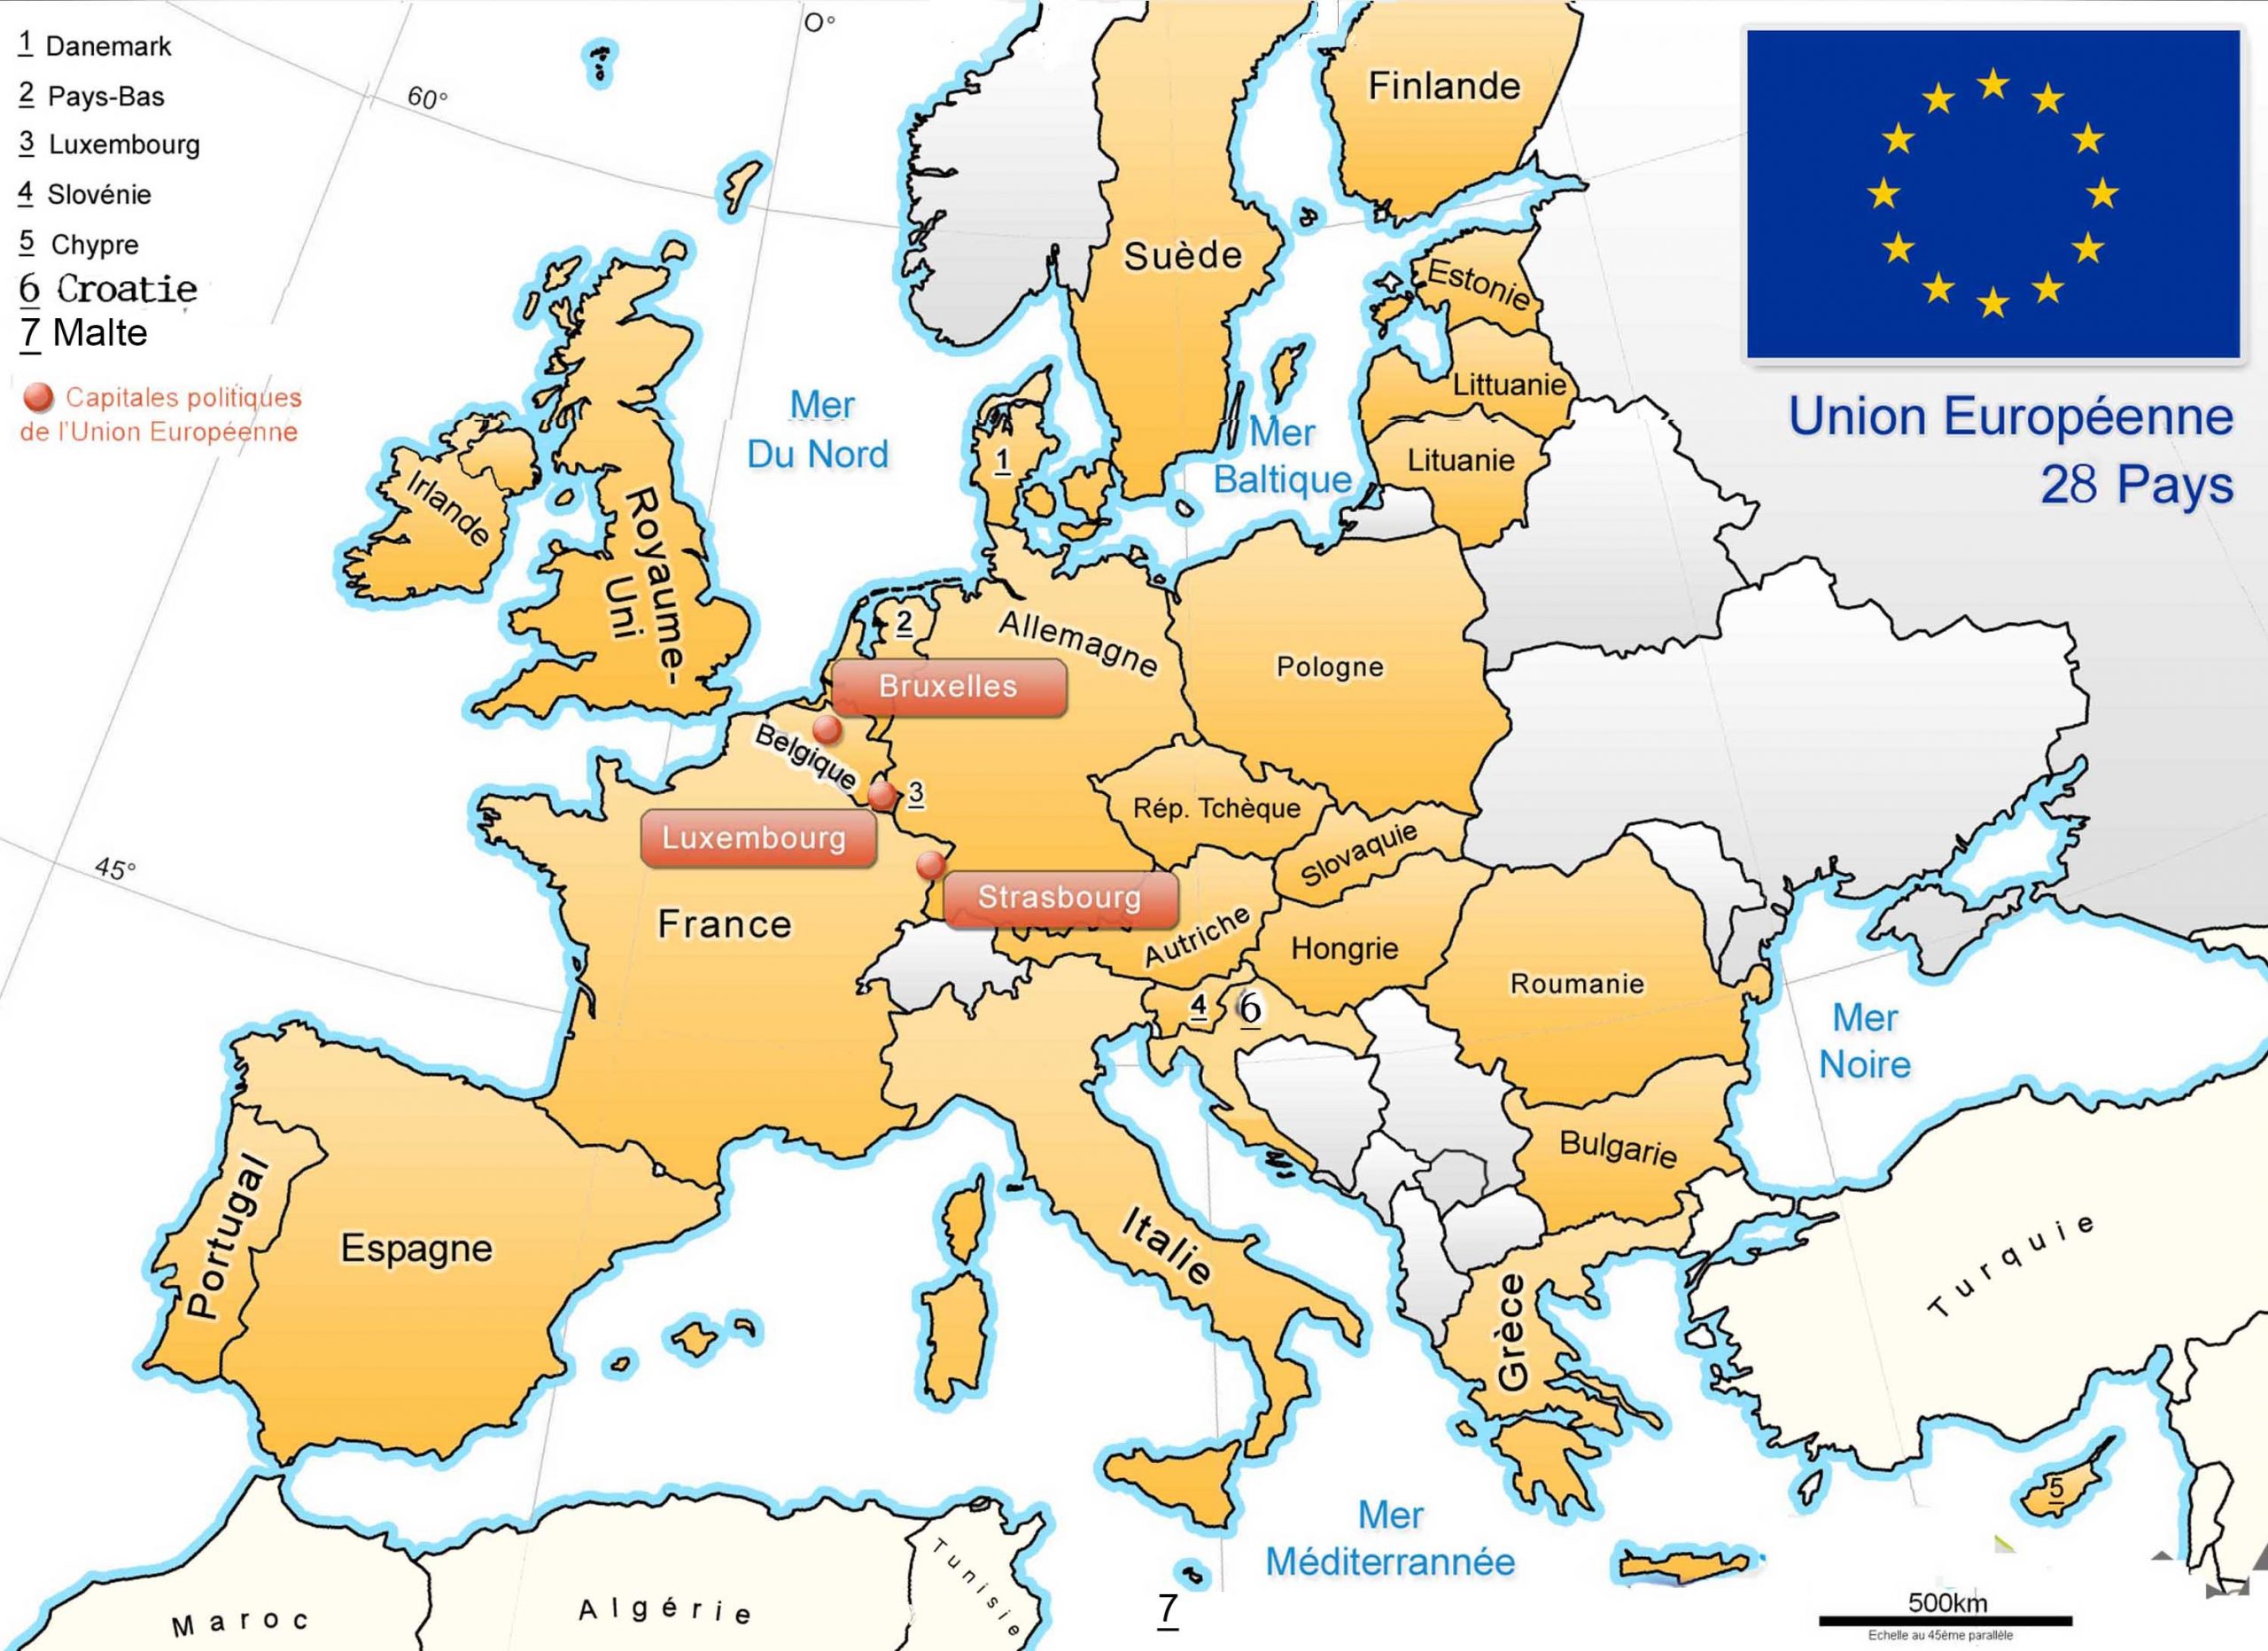 Apprendre À Placer Les Pays De L' Union Européenne - Le Blog avec Carte Capitale Europe